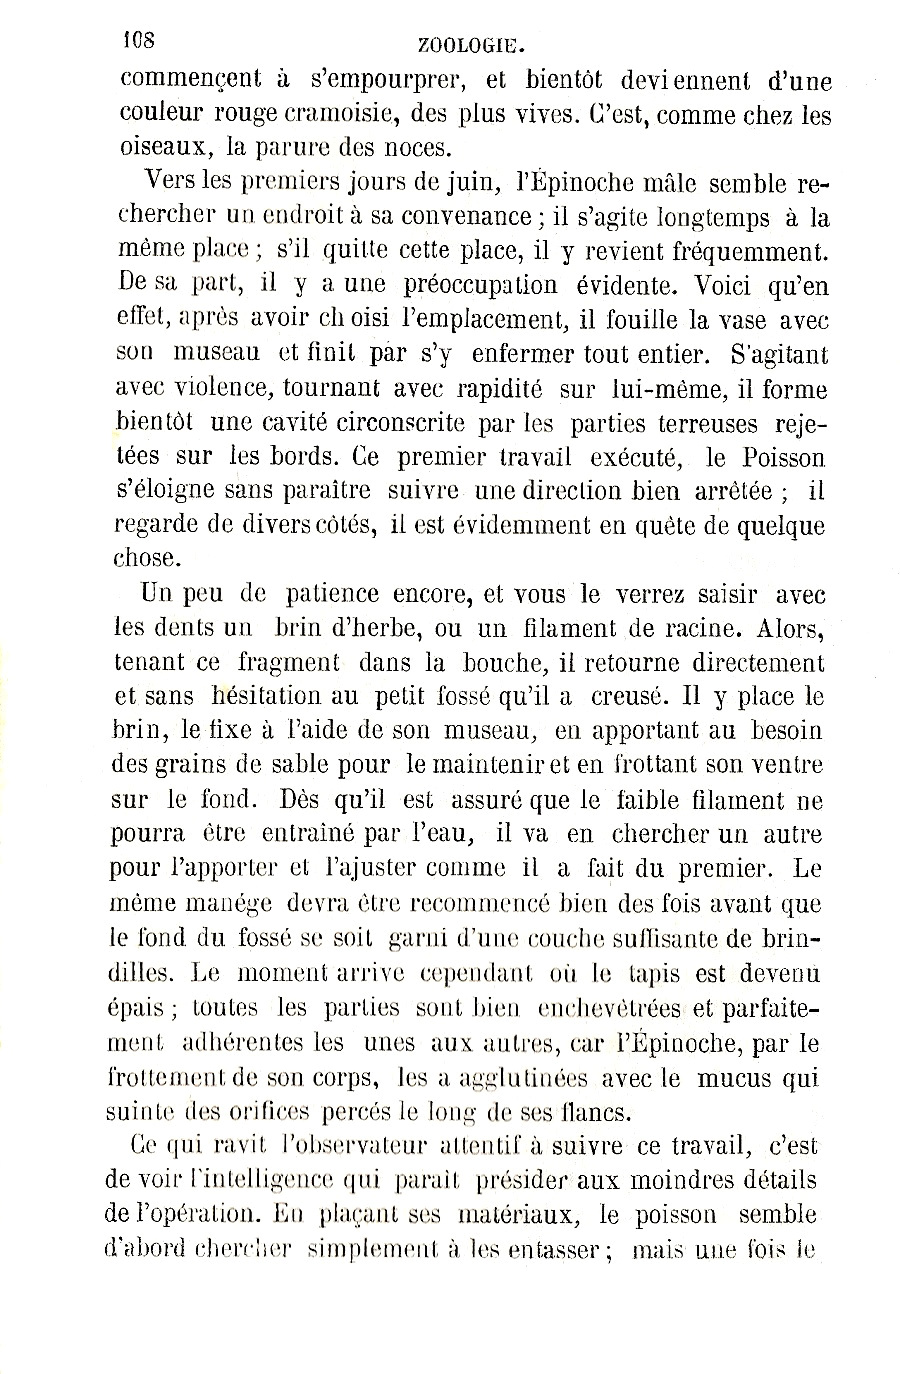 extrait de Zoologie de Fabre publié en 1872, page 108